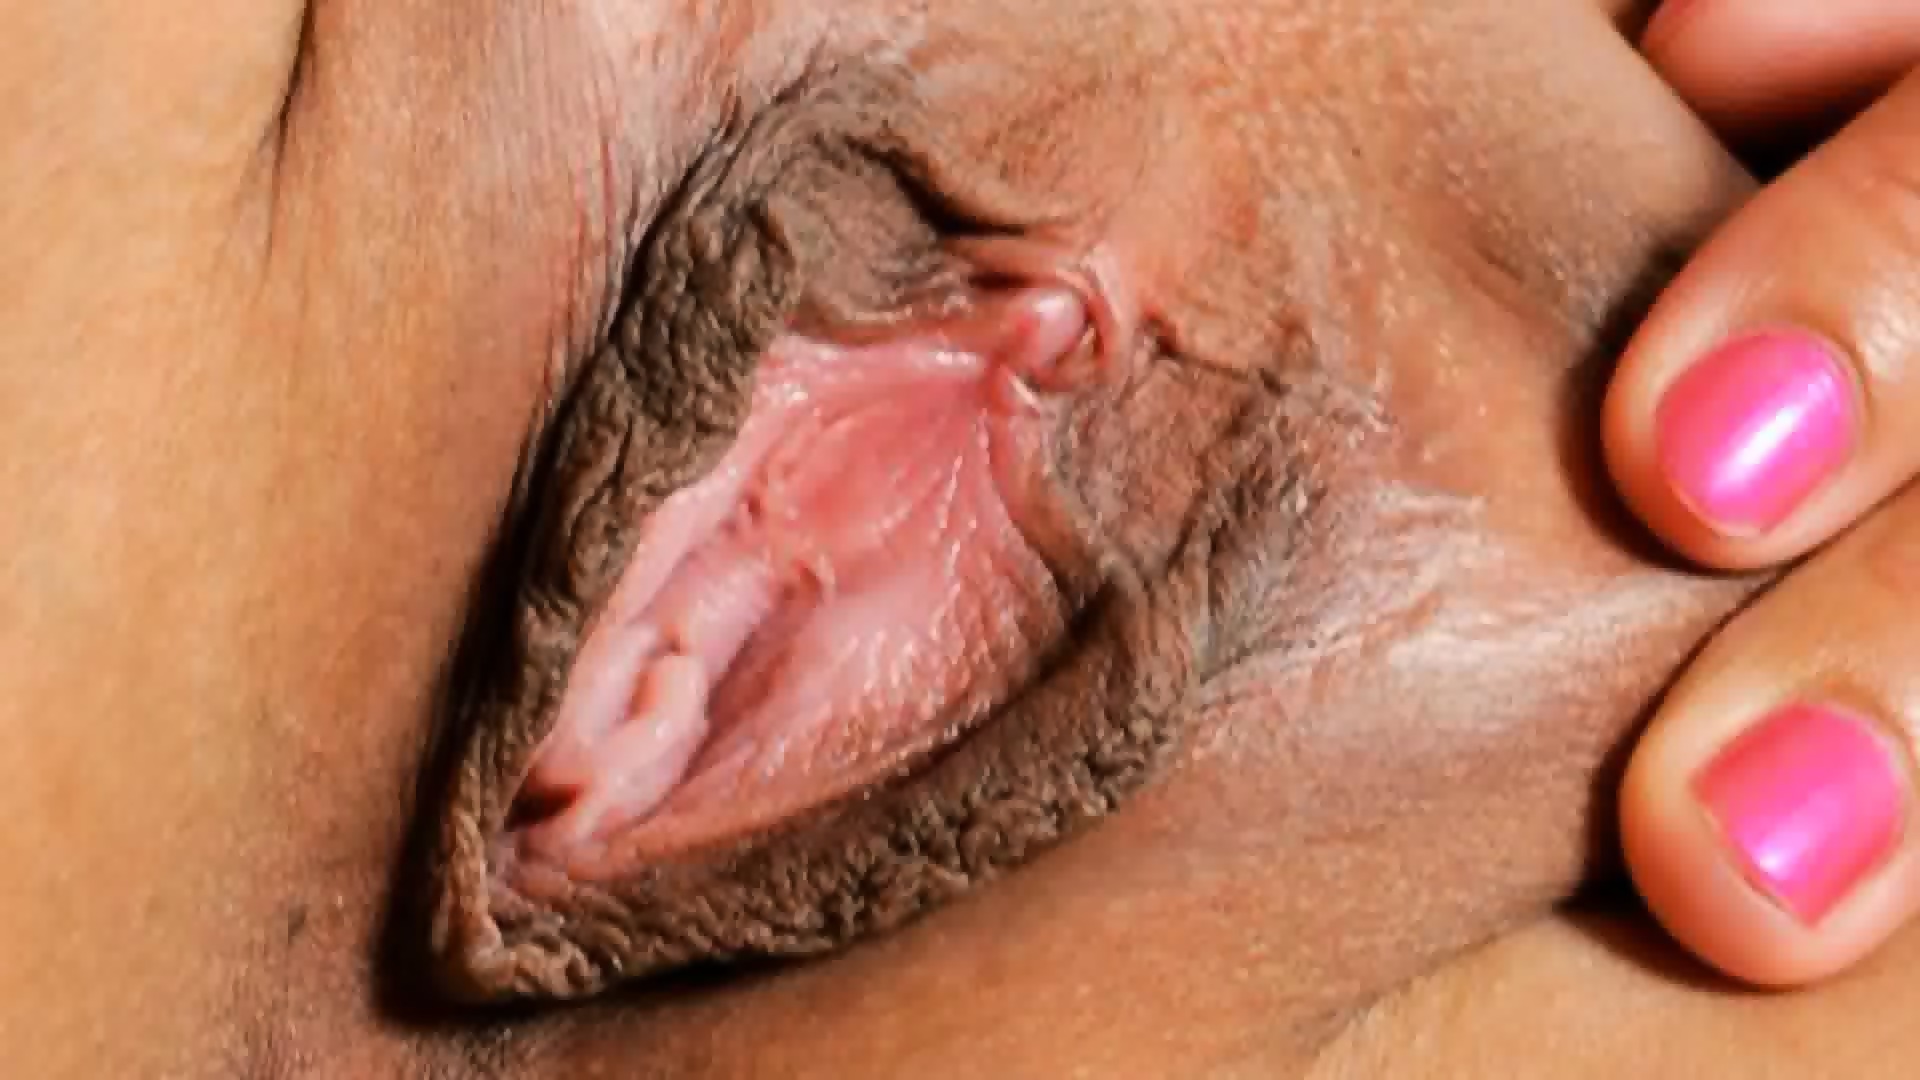 pics Vagina close up